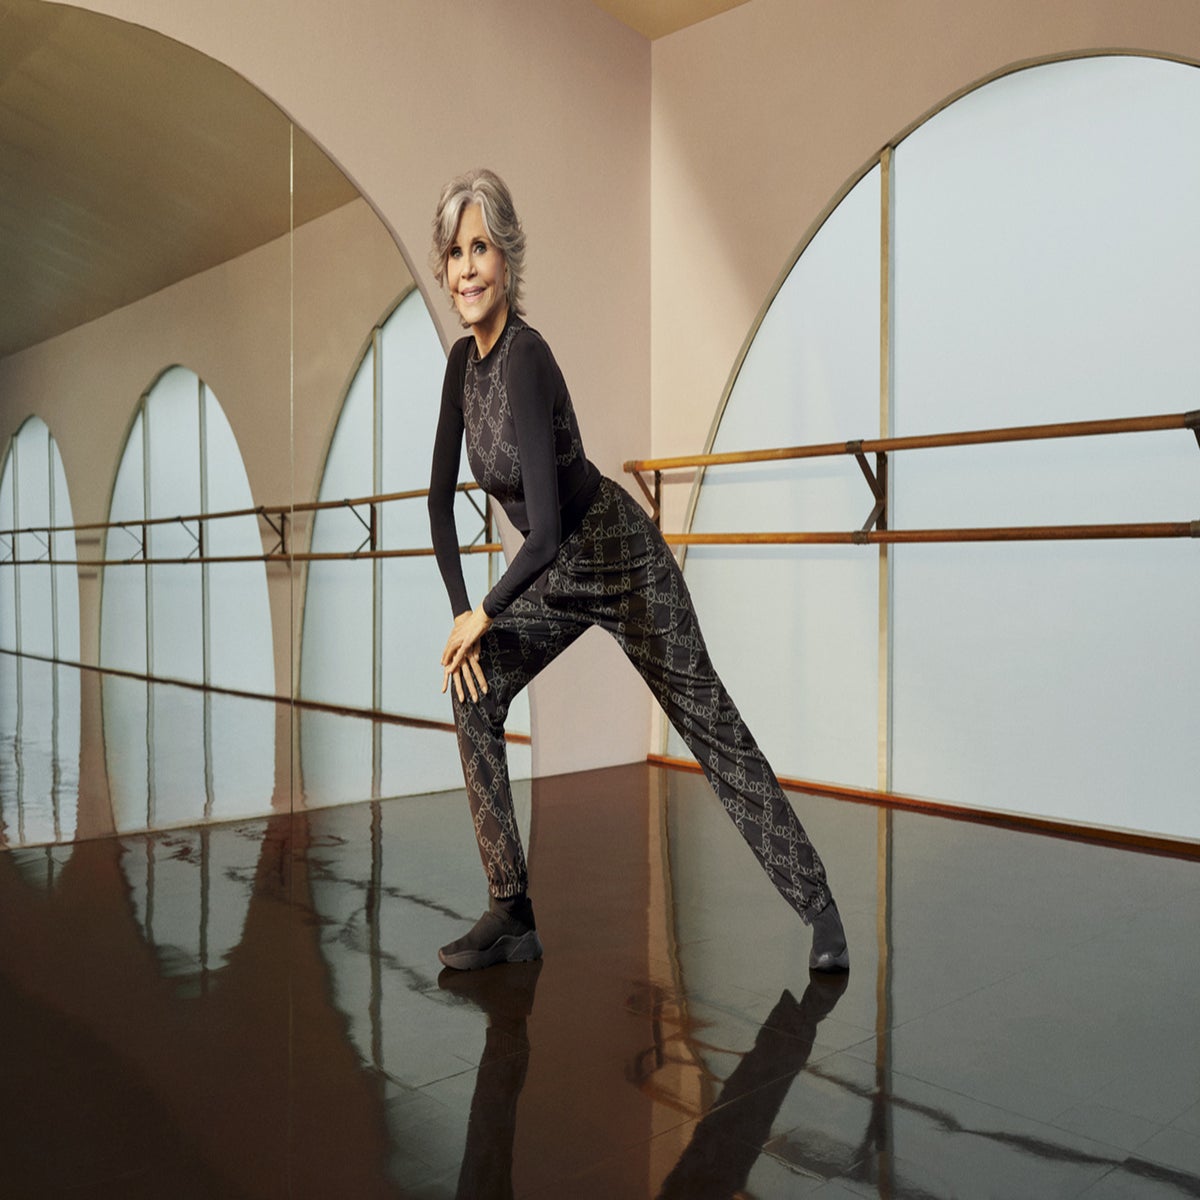 Jane Fonda proves she's still a fitness icon at 84 in major fashion  campaign